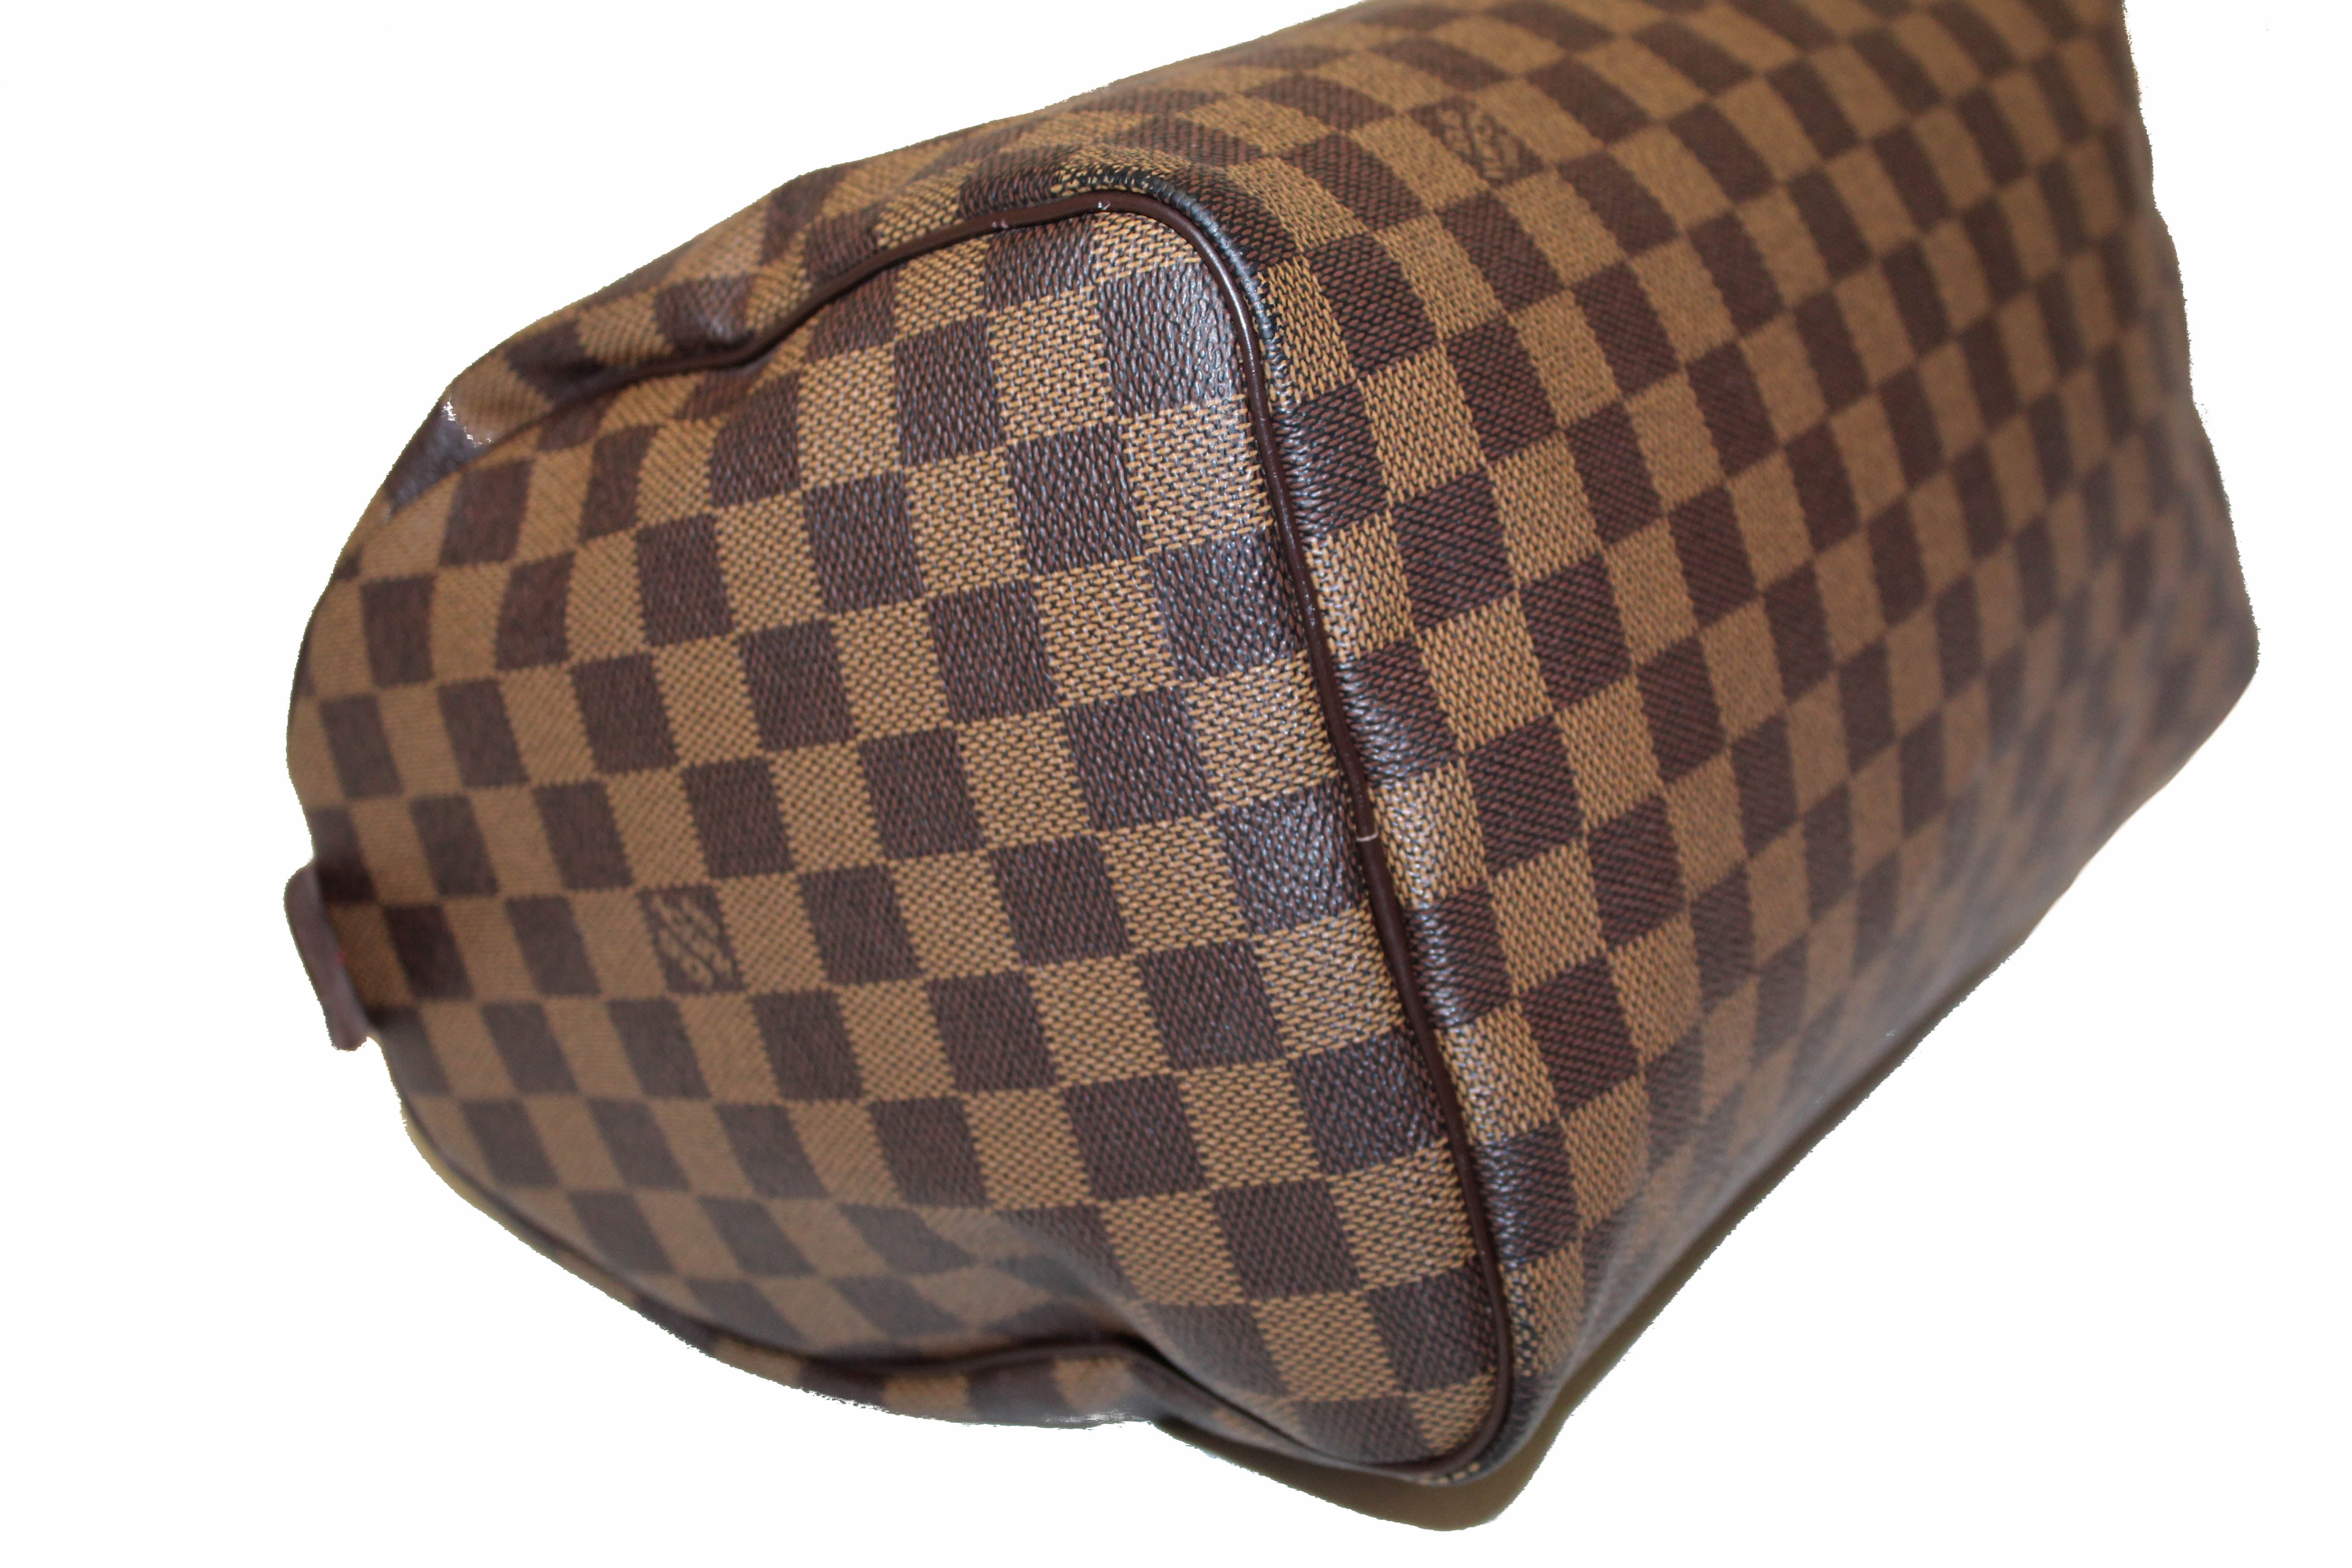 Authentic Louis Vuitton Damier Ebene Speedy 30 Handbag – Paris Station Shop